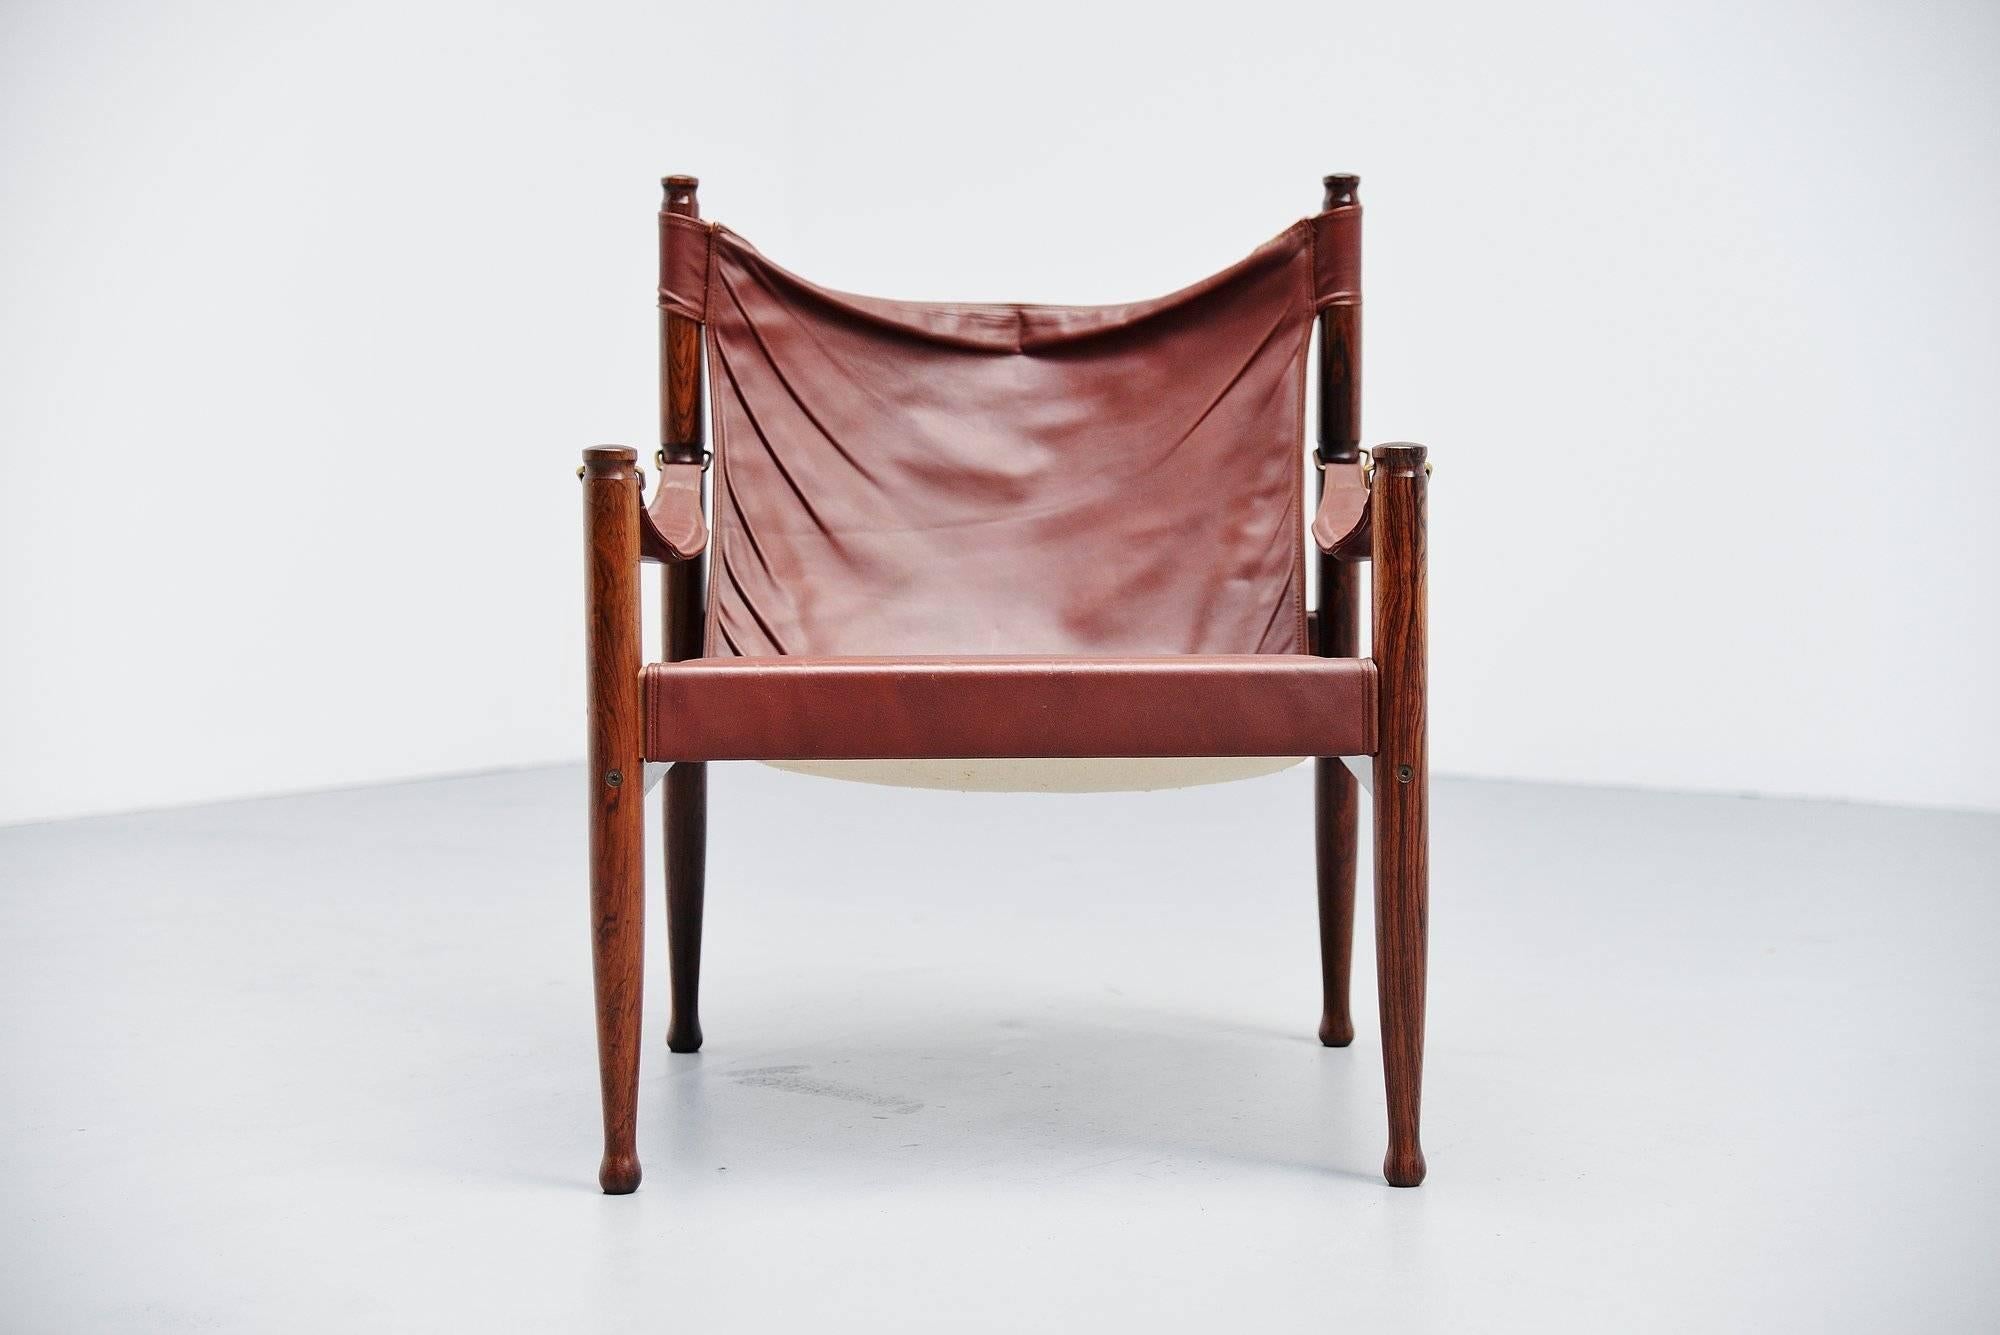 Atemberaubender Safari-Sessel, entworfen von Erik Worts und hergestellt von Niels Eilersen, Dänemark, 1960. Der Entwurf basiert auf einem traditionellen englischen Stuhl, der von Jägern in Afrika und Asien verwendet wurde. Hergestellt aus massivem